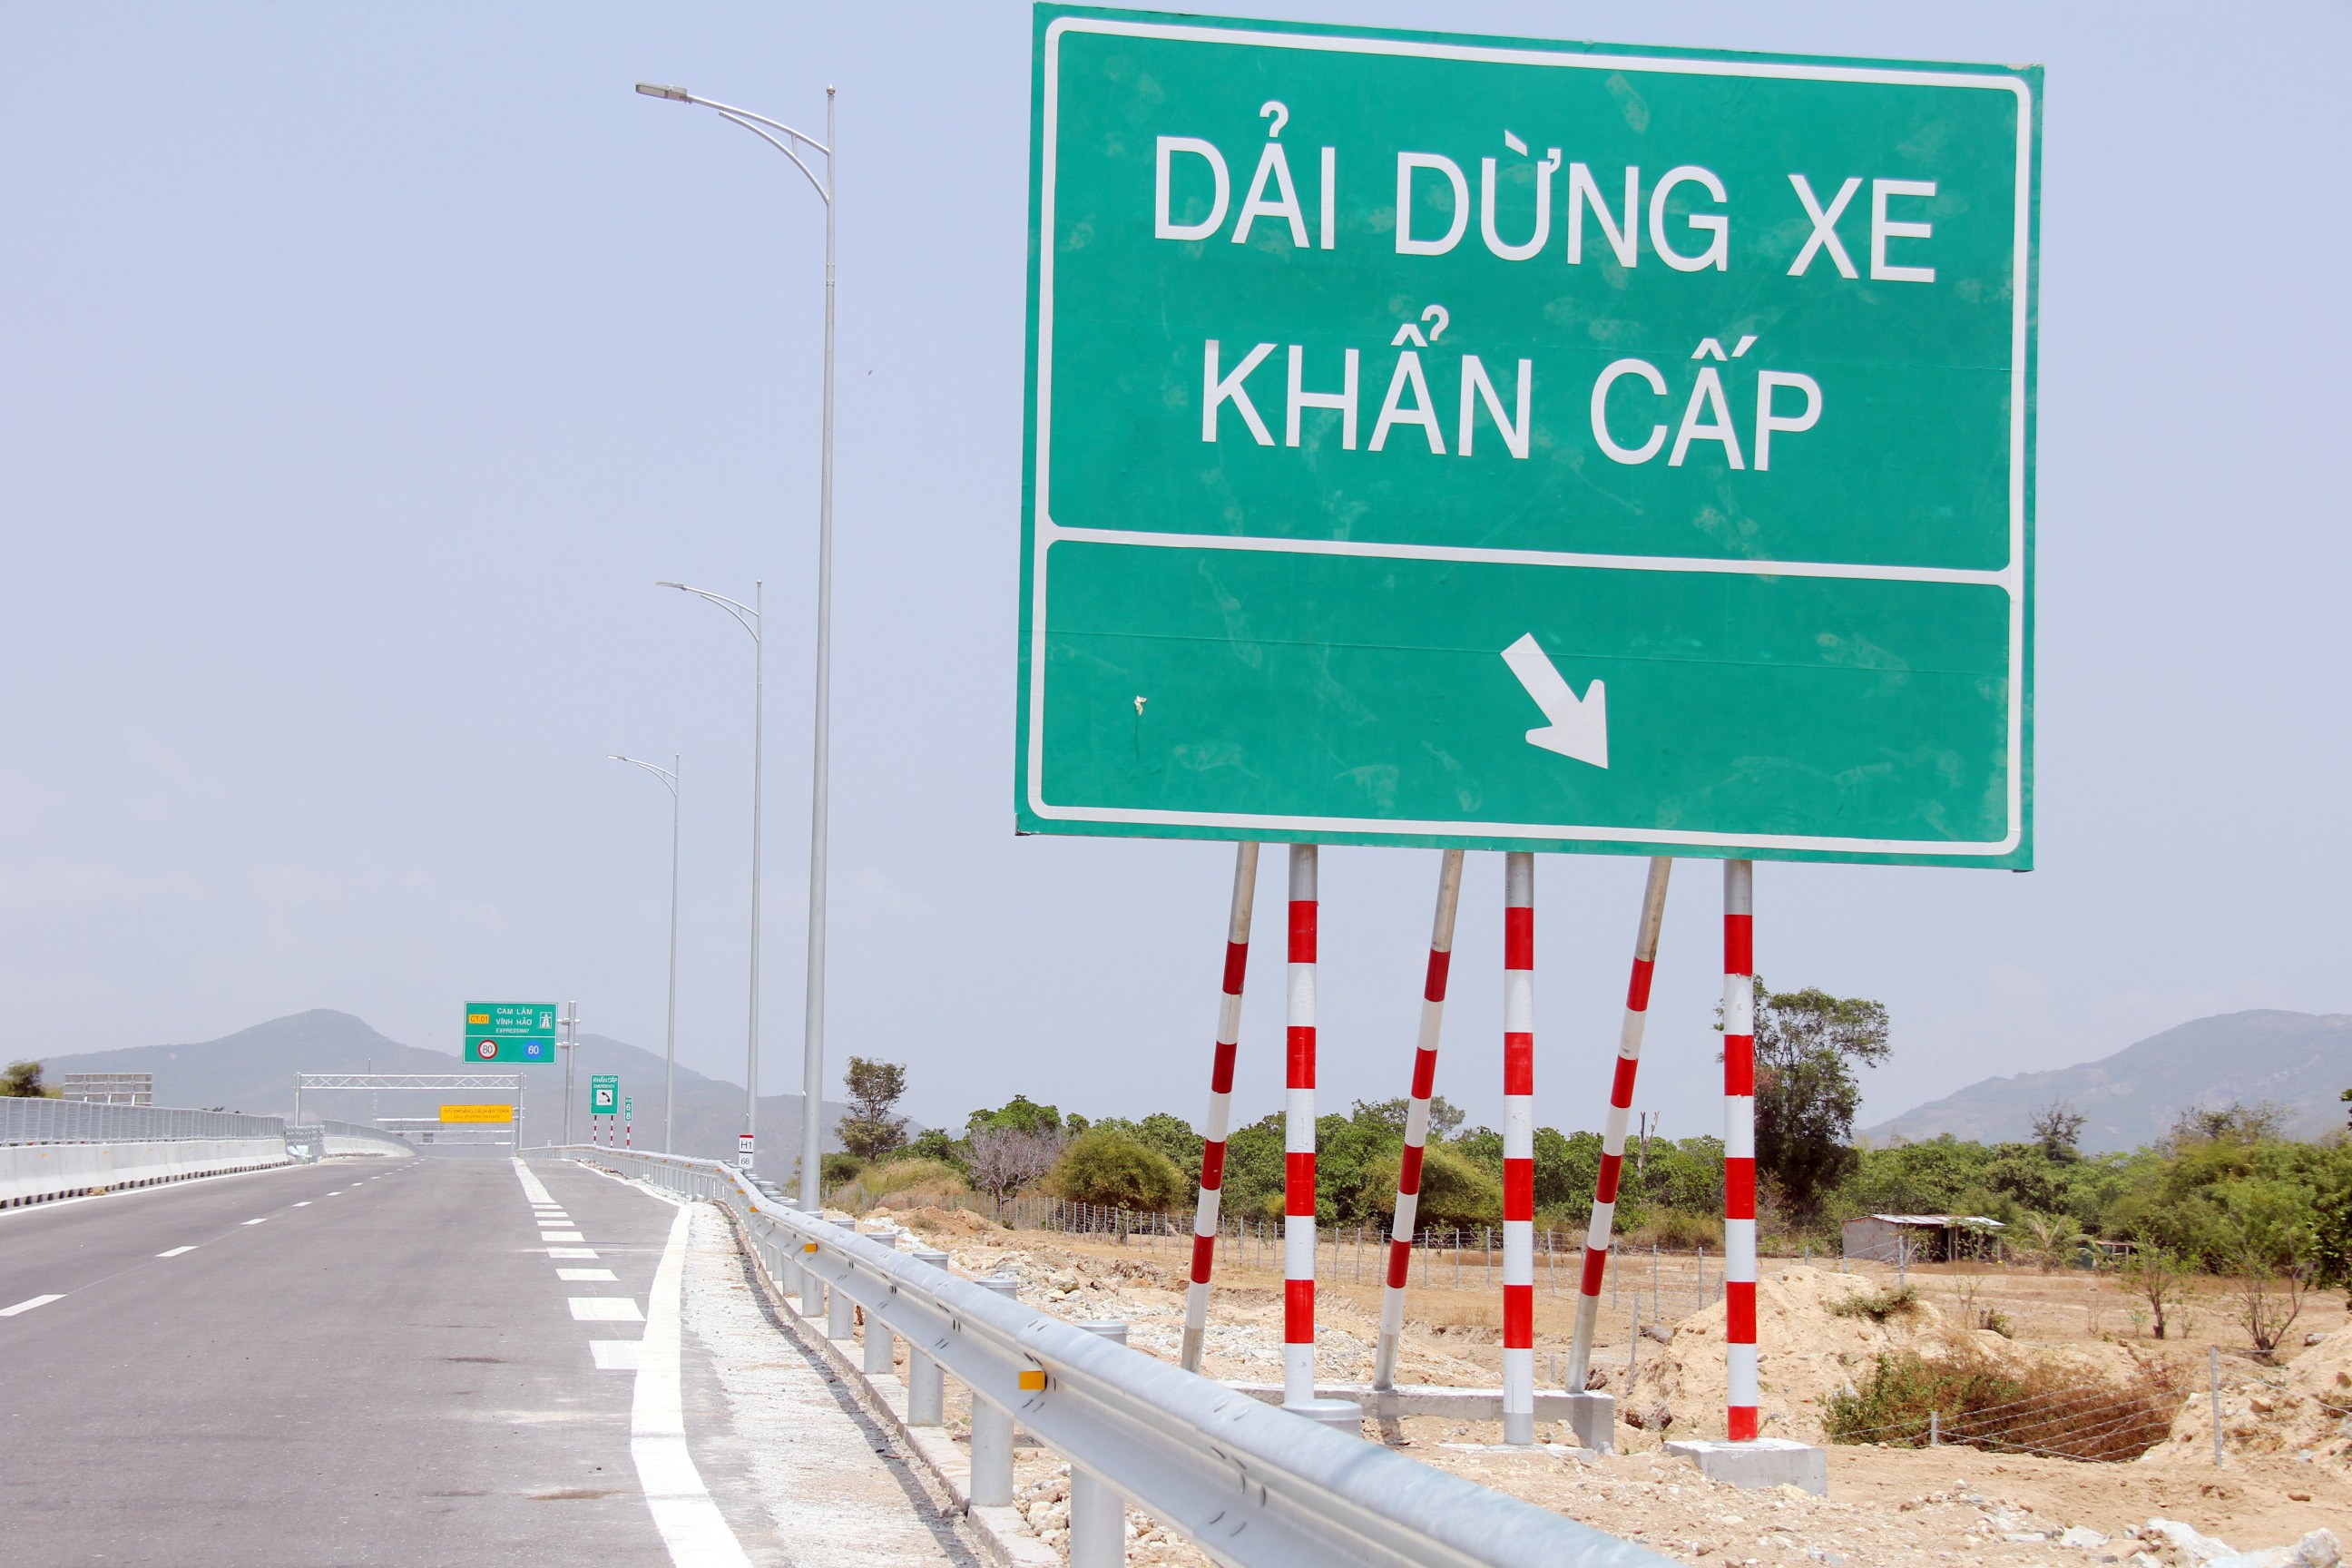 Cũng như tuyến Vĩnh Hảo - Phan Thiết, do chỉ 4 làn đường, cao tốc Cam Lâm - Vĩnh Hảo không có làn dừng khẩn cấp hai bên, mà chỉ bố trí các dải dừng khẩn cấp nằm dọc đường, cách nhau 4-5km.